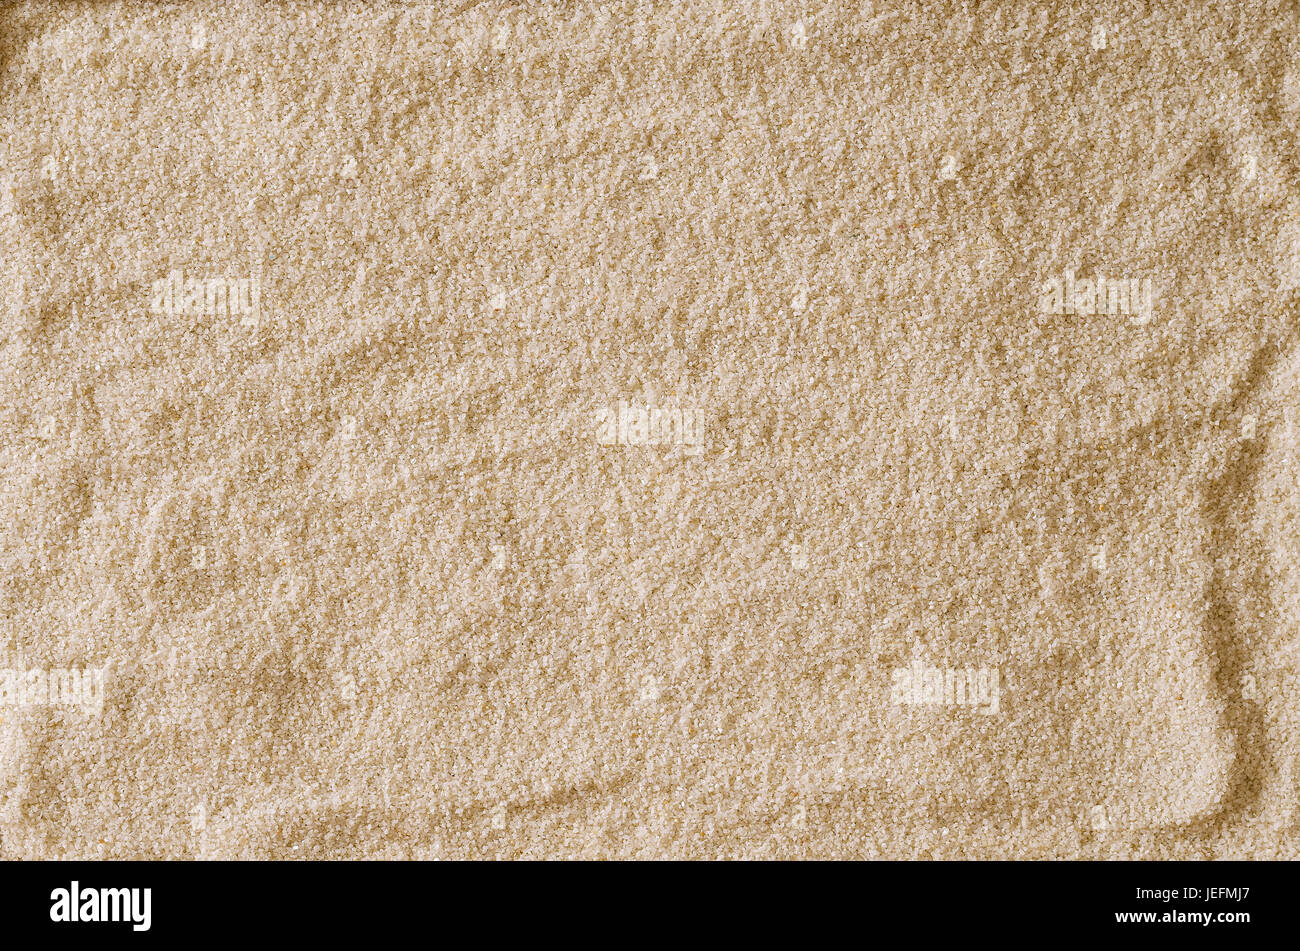 Rau und uneben leer Sandoberfläche als Hintergrund oder als Textur verwenden. Hell braun und Ocker gefärbt Sandkörner. Makrofoto Nahaufnahme von oben. Stockfoto